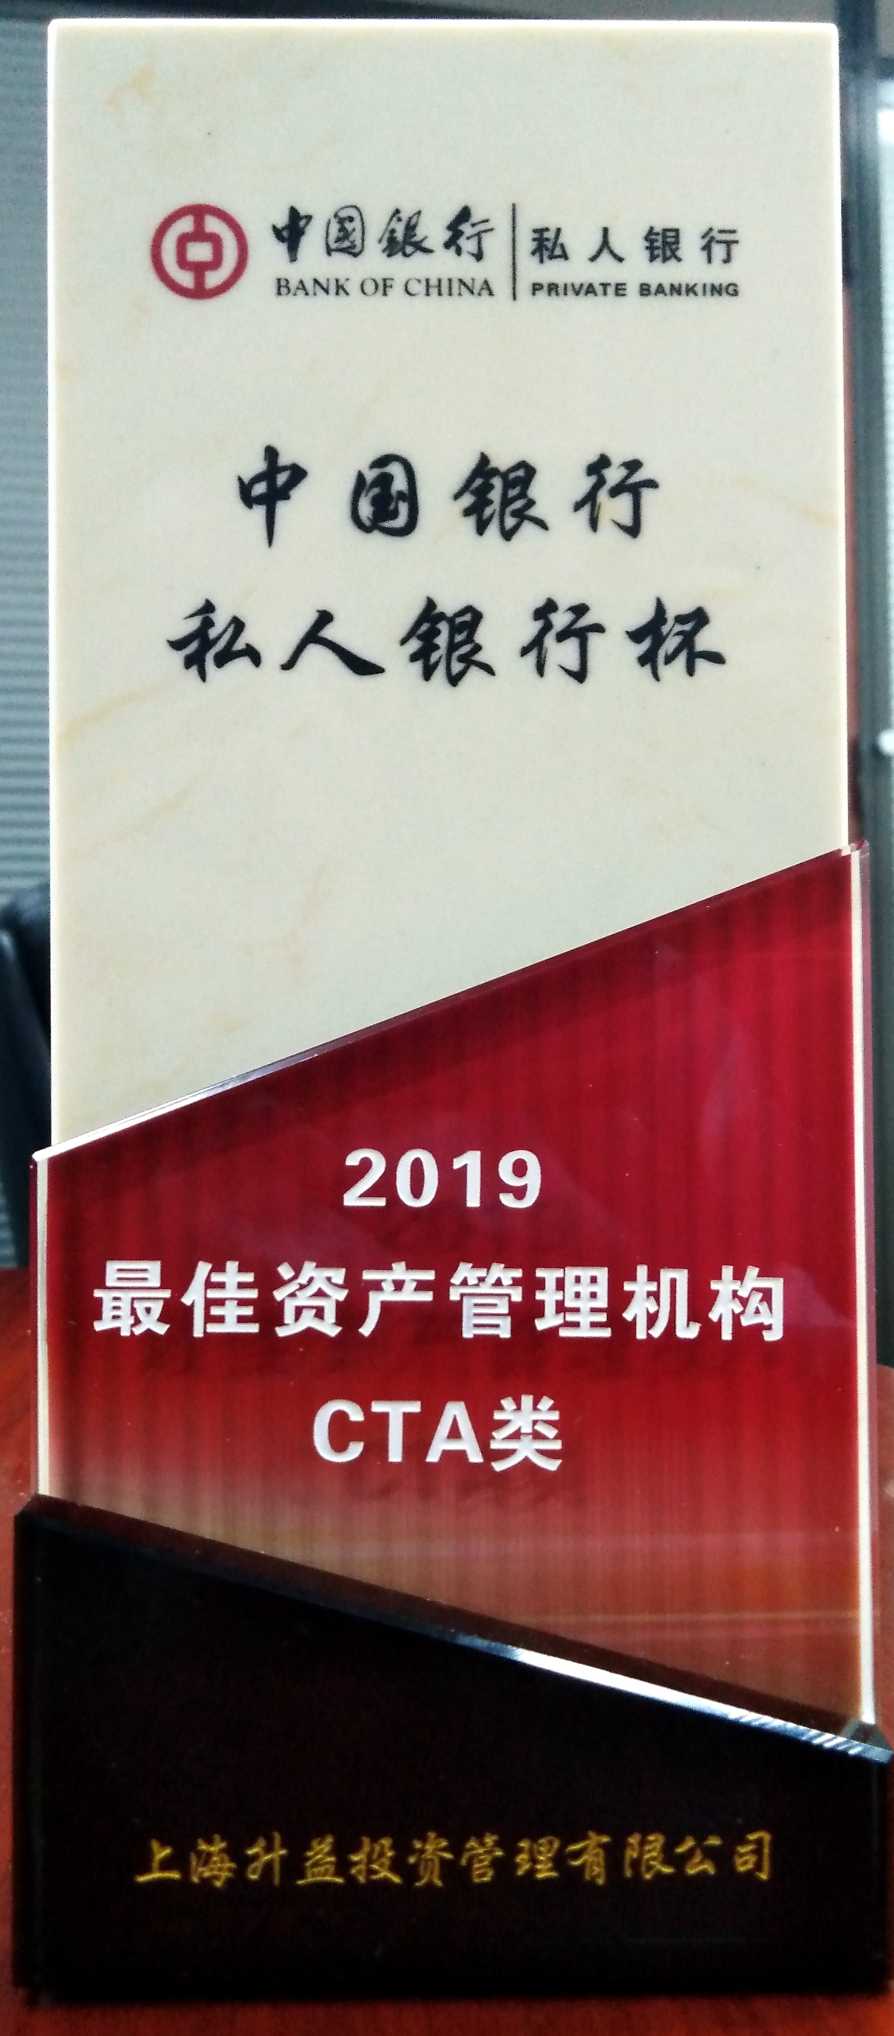 上海升益投资管理有限公司荣获“中国银行私人银行杯”2019最佳资产管理机构CTA类-奖杯